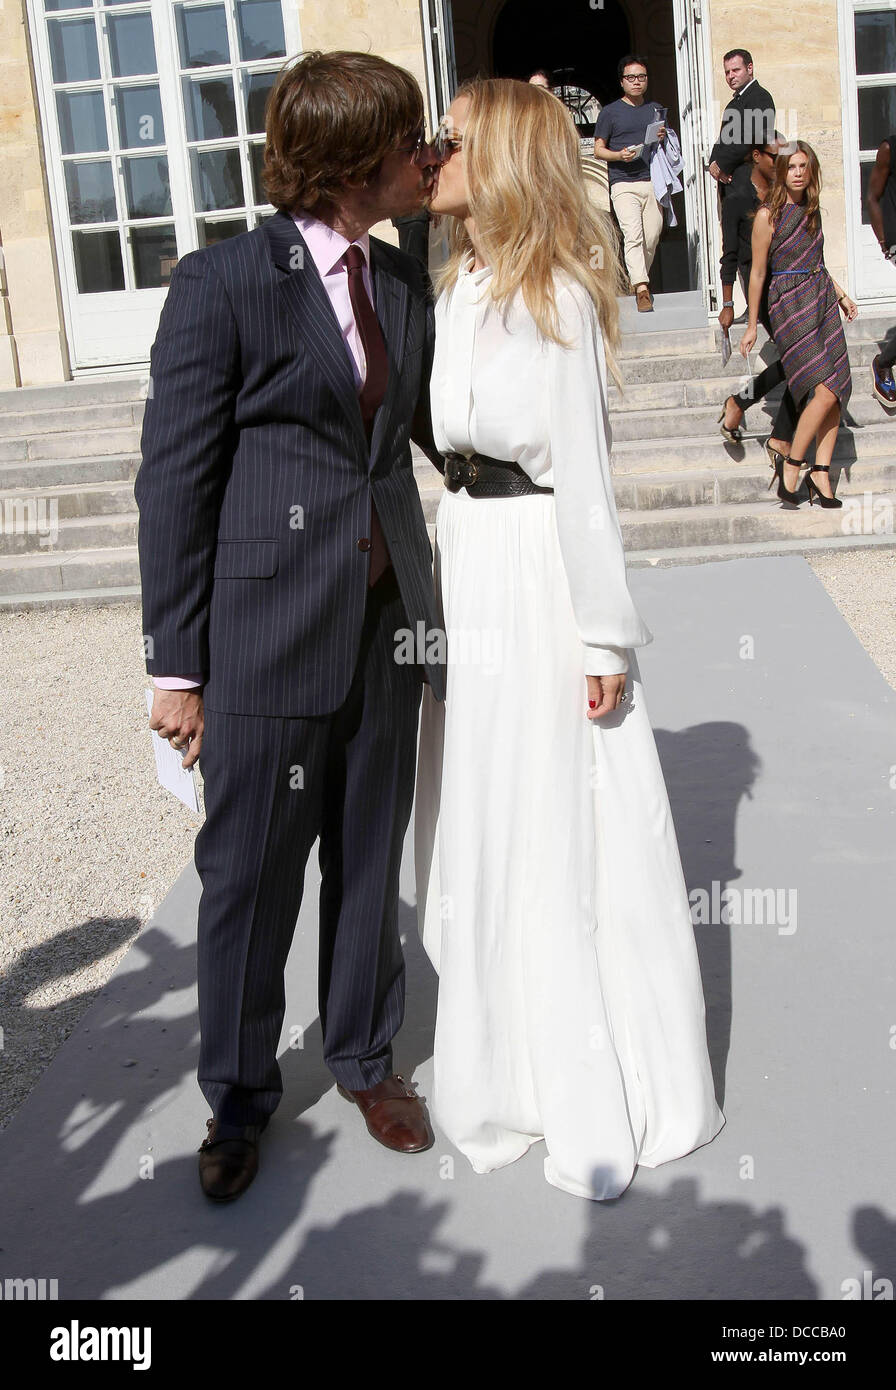 Roger Berman e Rachel Zoe settimana della moda di Parigi la Primavera/Estate 2012 pronti a usura - Christian Dior - arrivi al di fuori di Parigi, Francia - 30.09.11 Foto Stock